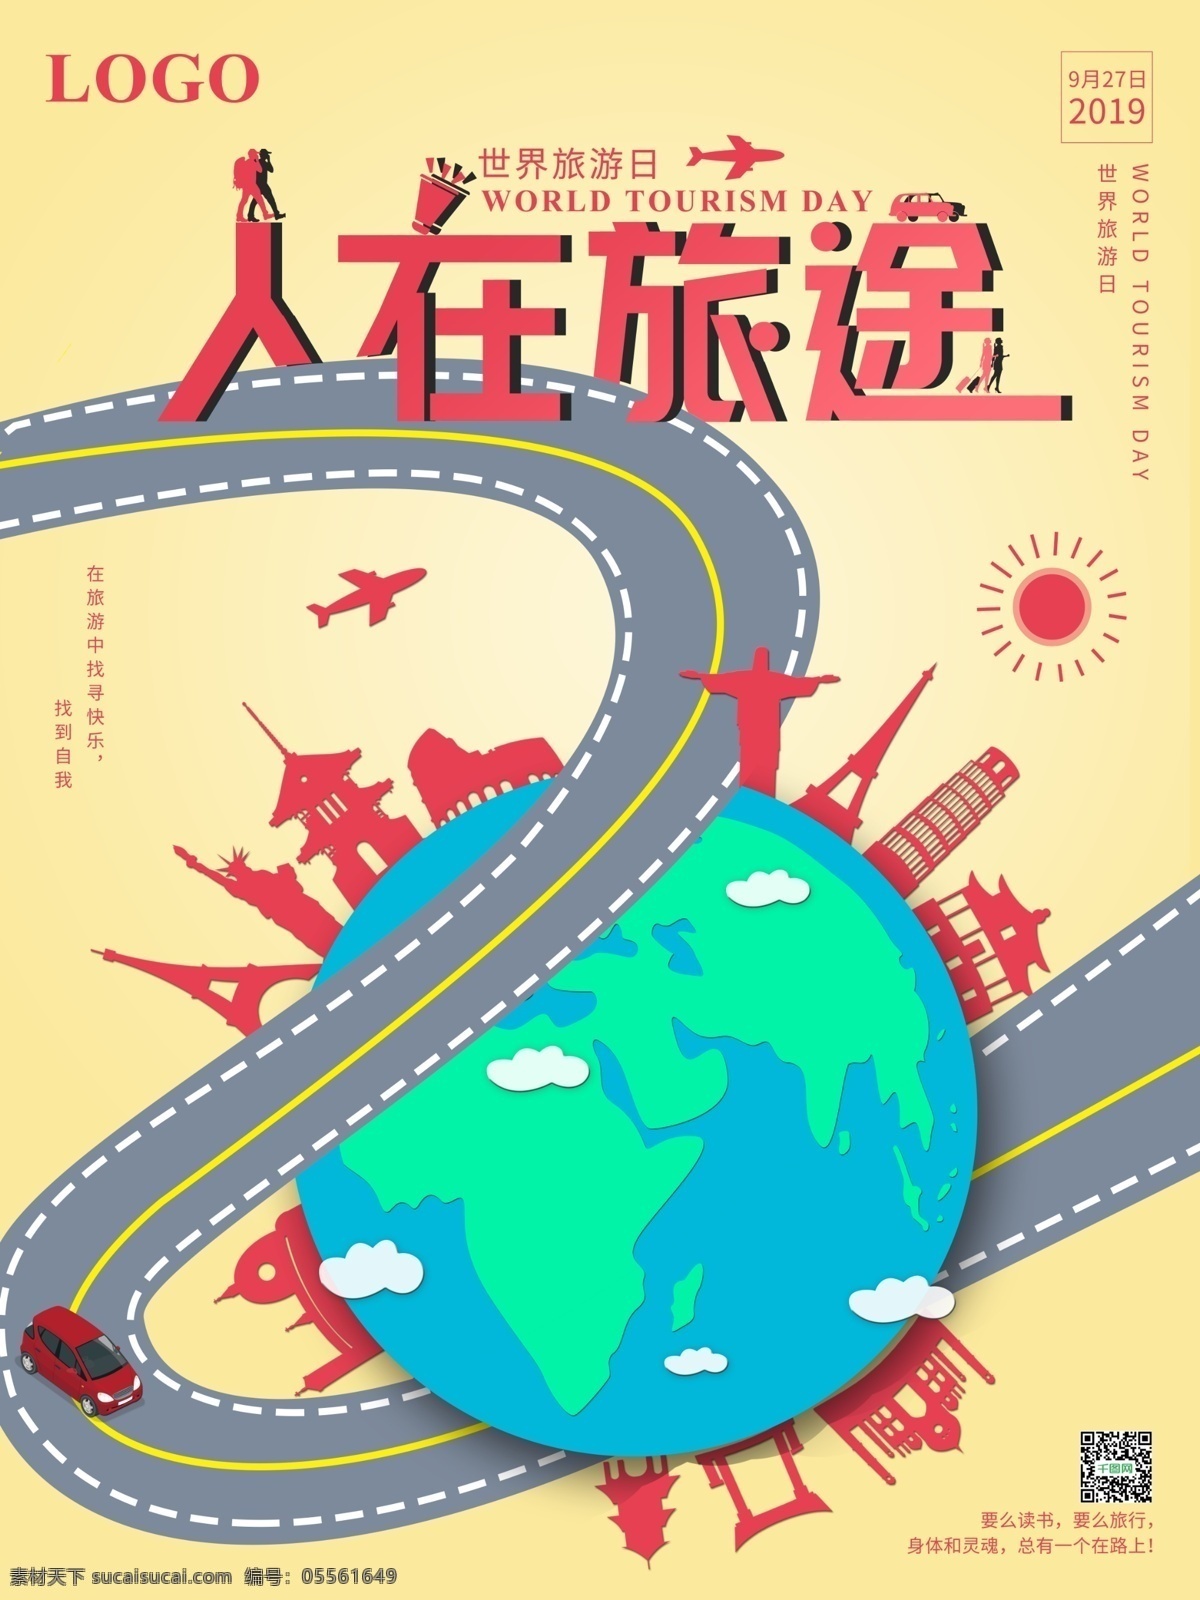 简约 风微 立体 人在旅途 世界 旅游 日 宣传海报 简约风 世界旅游日 旅行 环球 世界游 旅游海报 商业海报